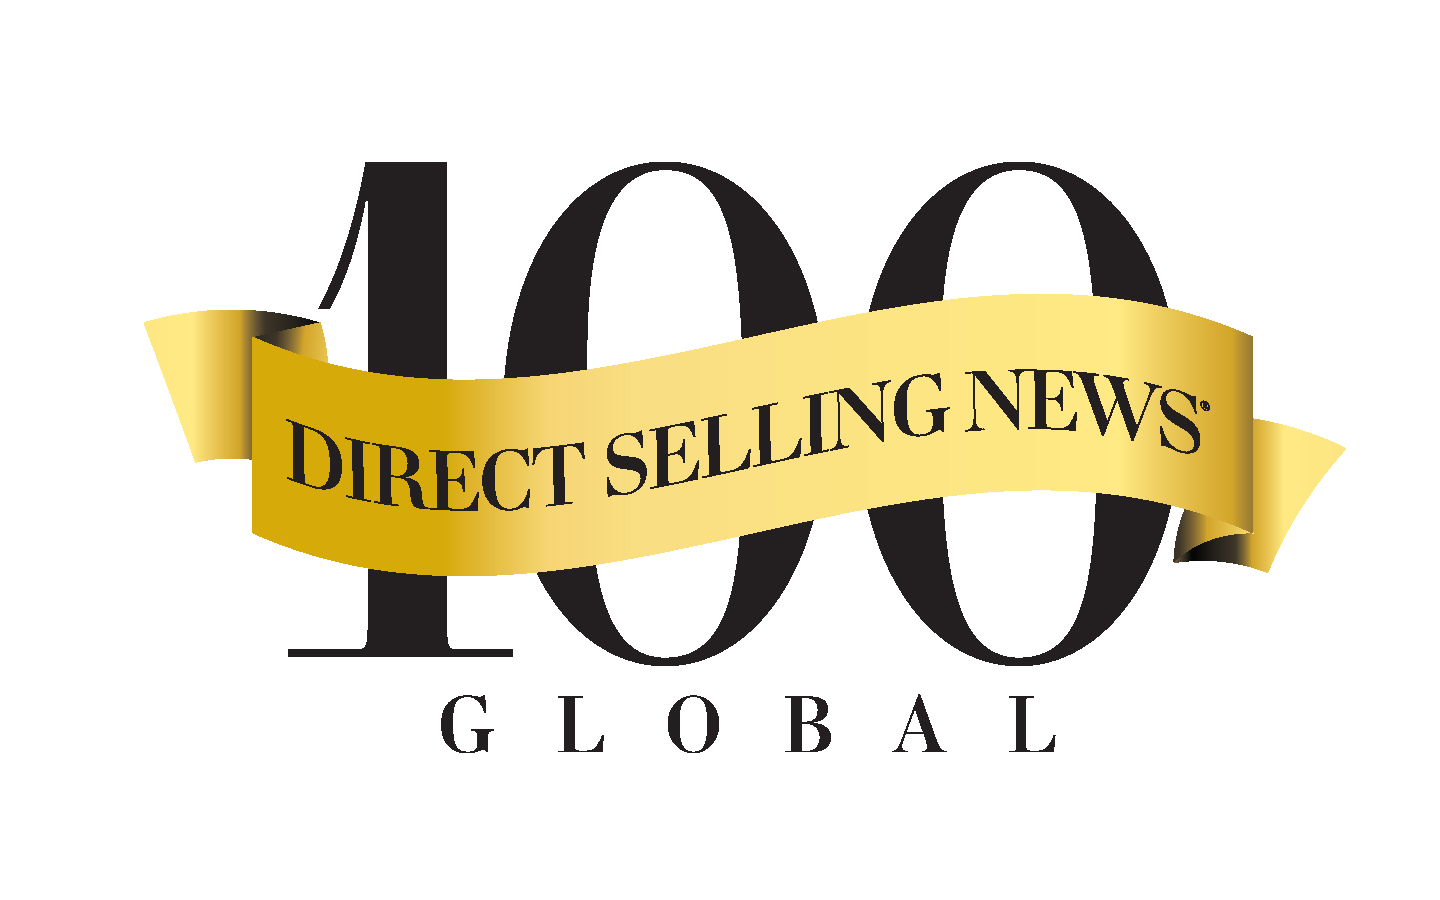 Direct Selling News 2020 Global 100 Listesini Açıkladı Network Okulu